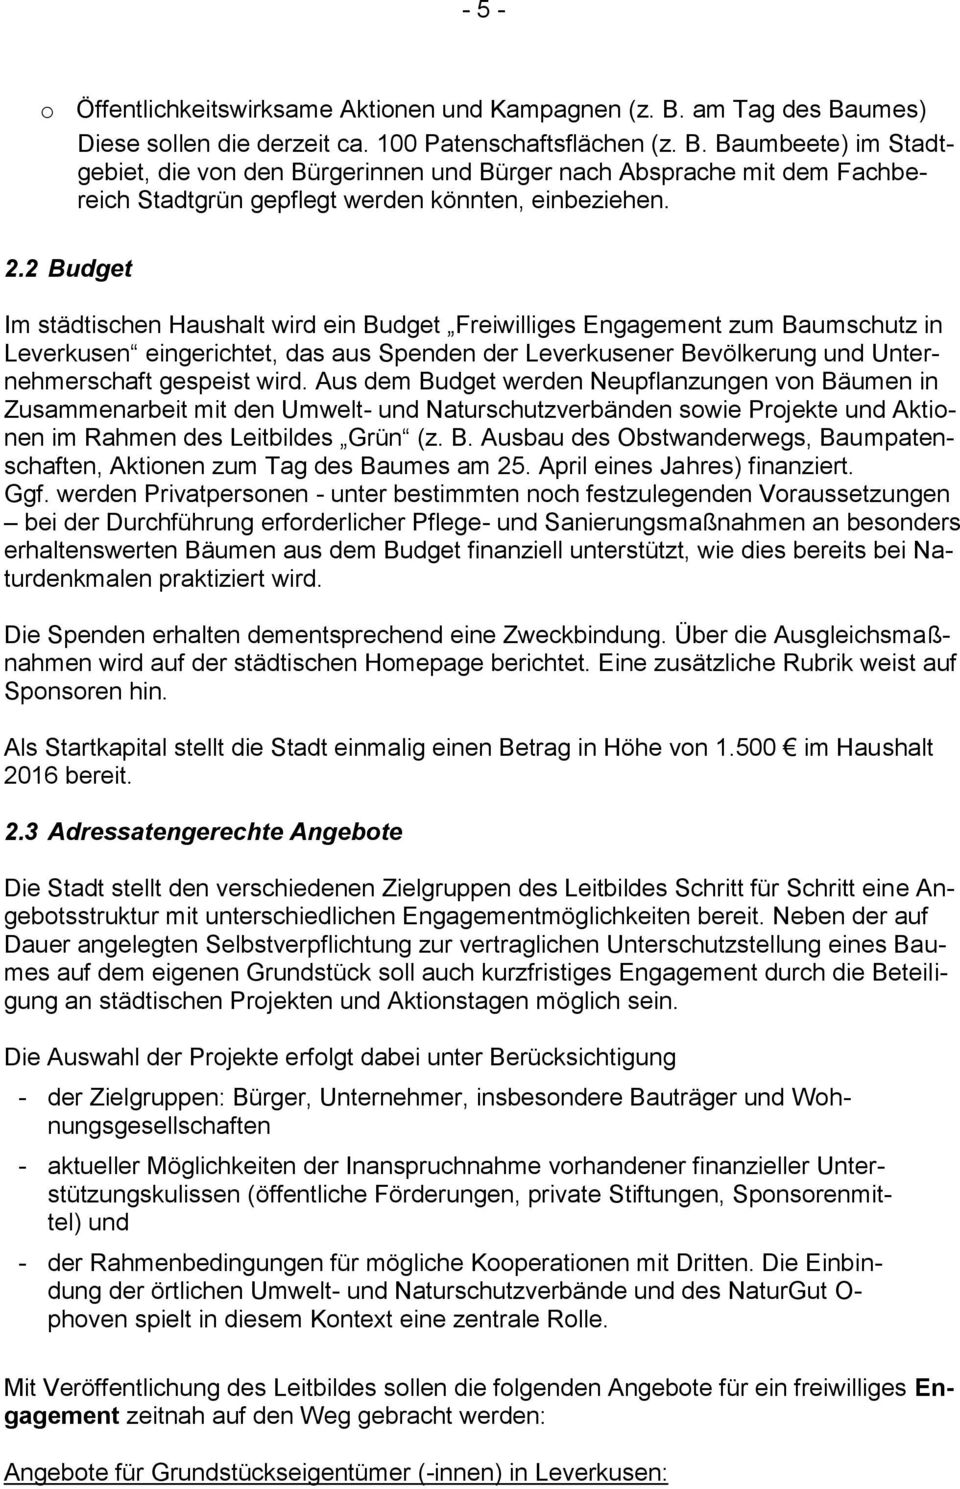 2.2 Budget Im städtischen Haushalt wird ein Budget Freiwilliges Engagement zum Baumschutz in Leverkusen eingerichtet, das aus Spenden der Leverkusener Bevölkerung und Unternehmerschaft gespeist wird.